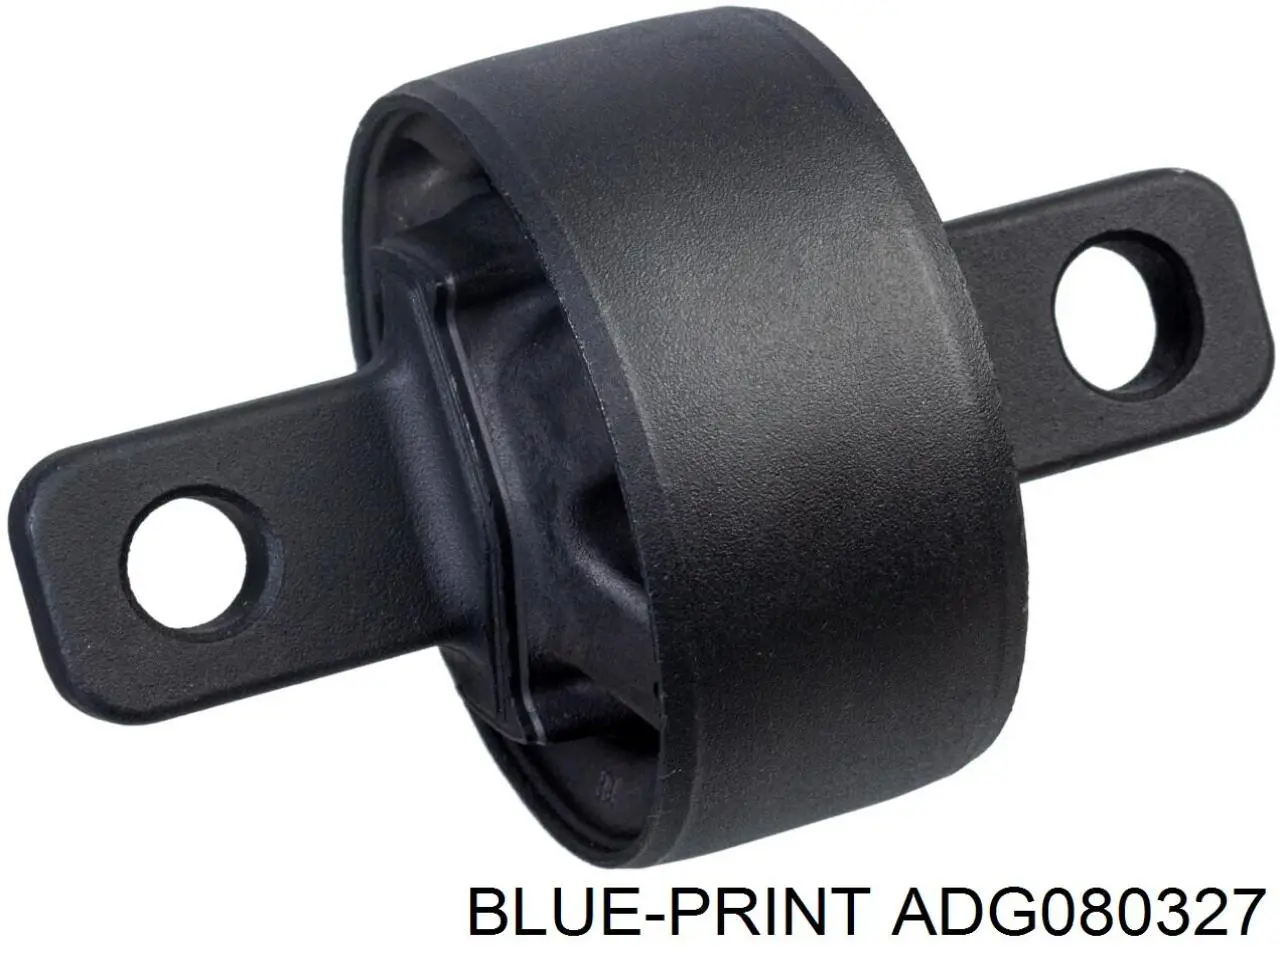 ADG080327 Blue Print suspensión, brazo oscilante, eje trasero